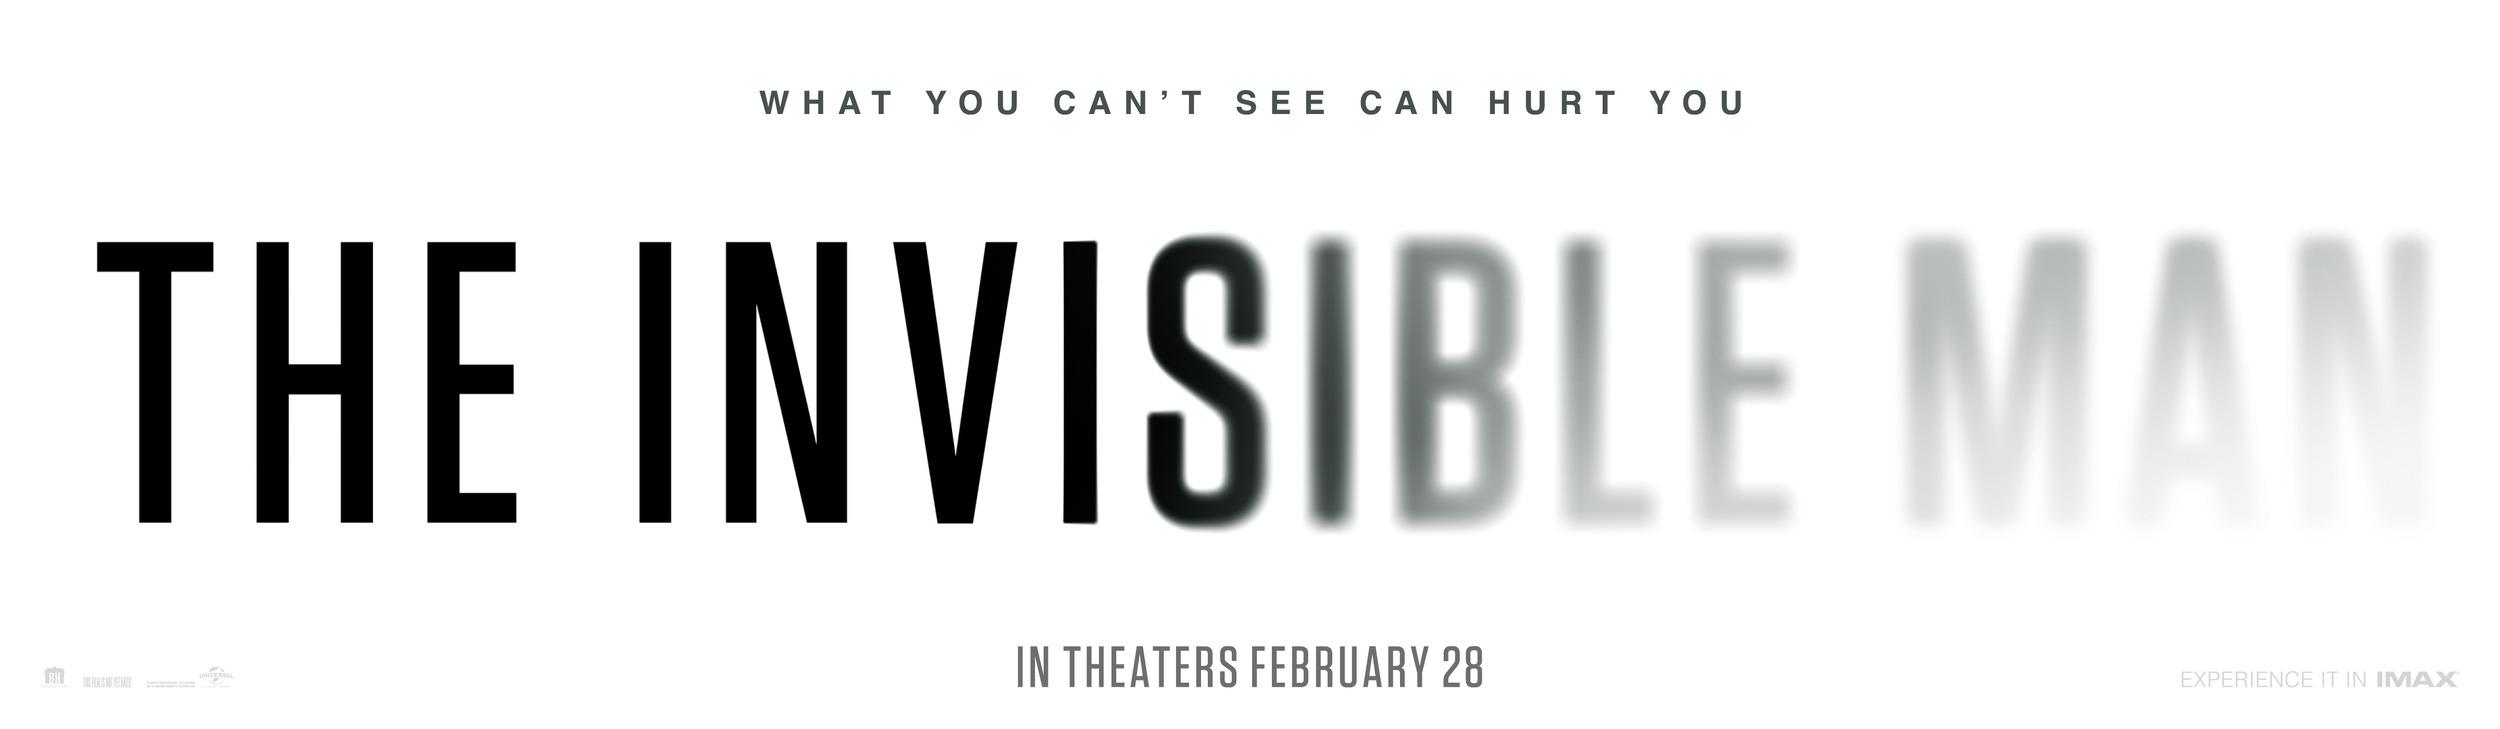 Постер фильма Человек-невидимка | The Invisible Man 